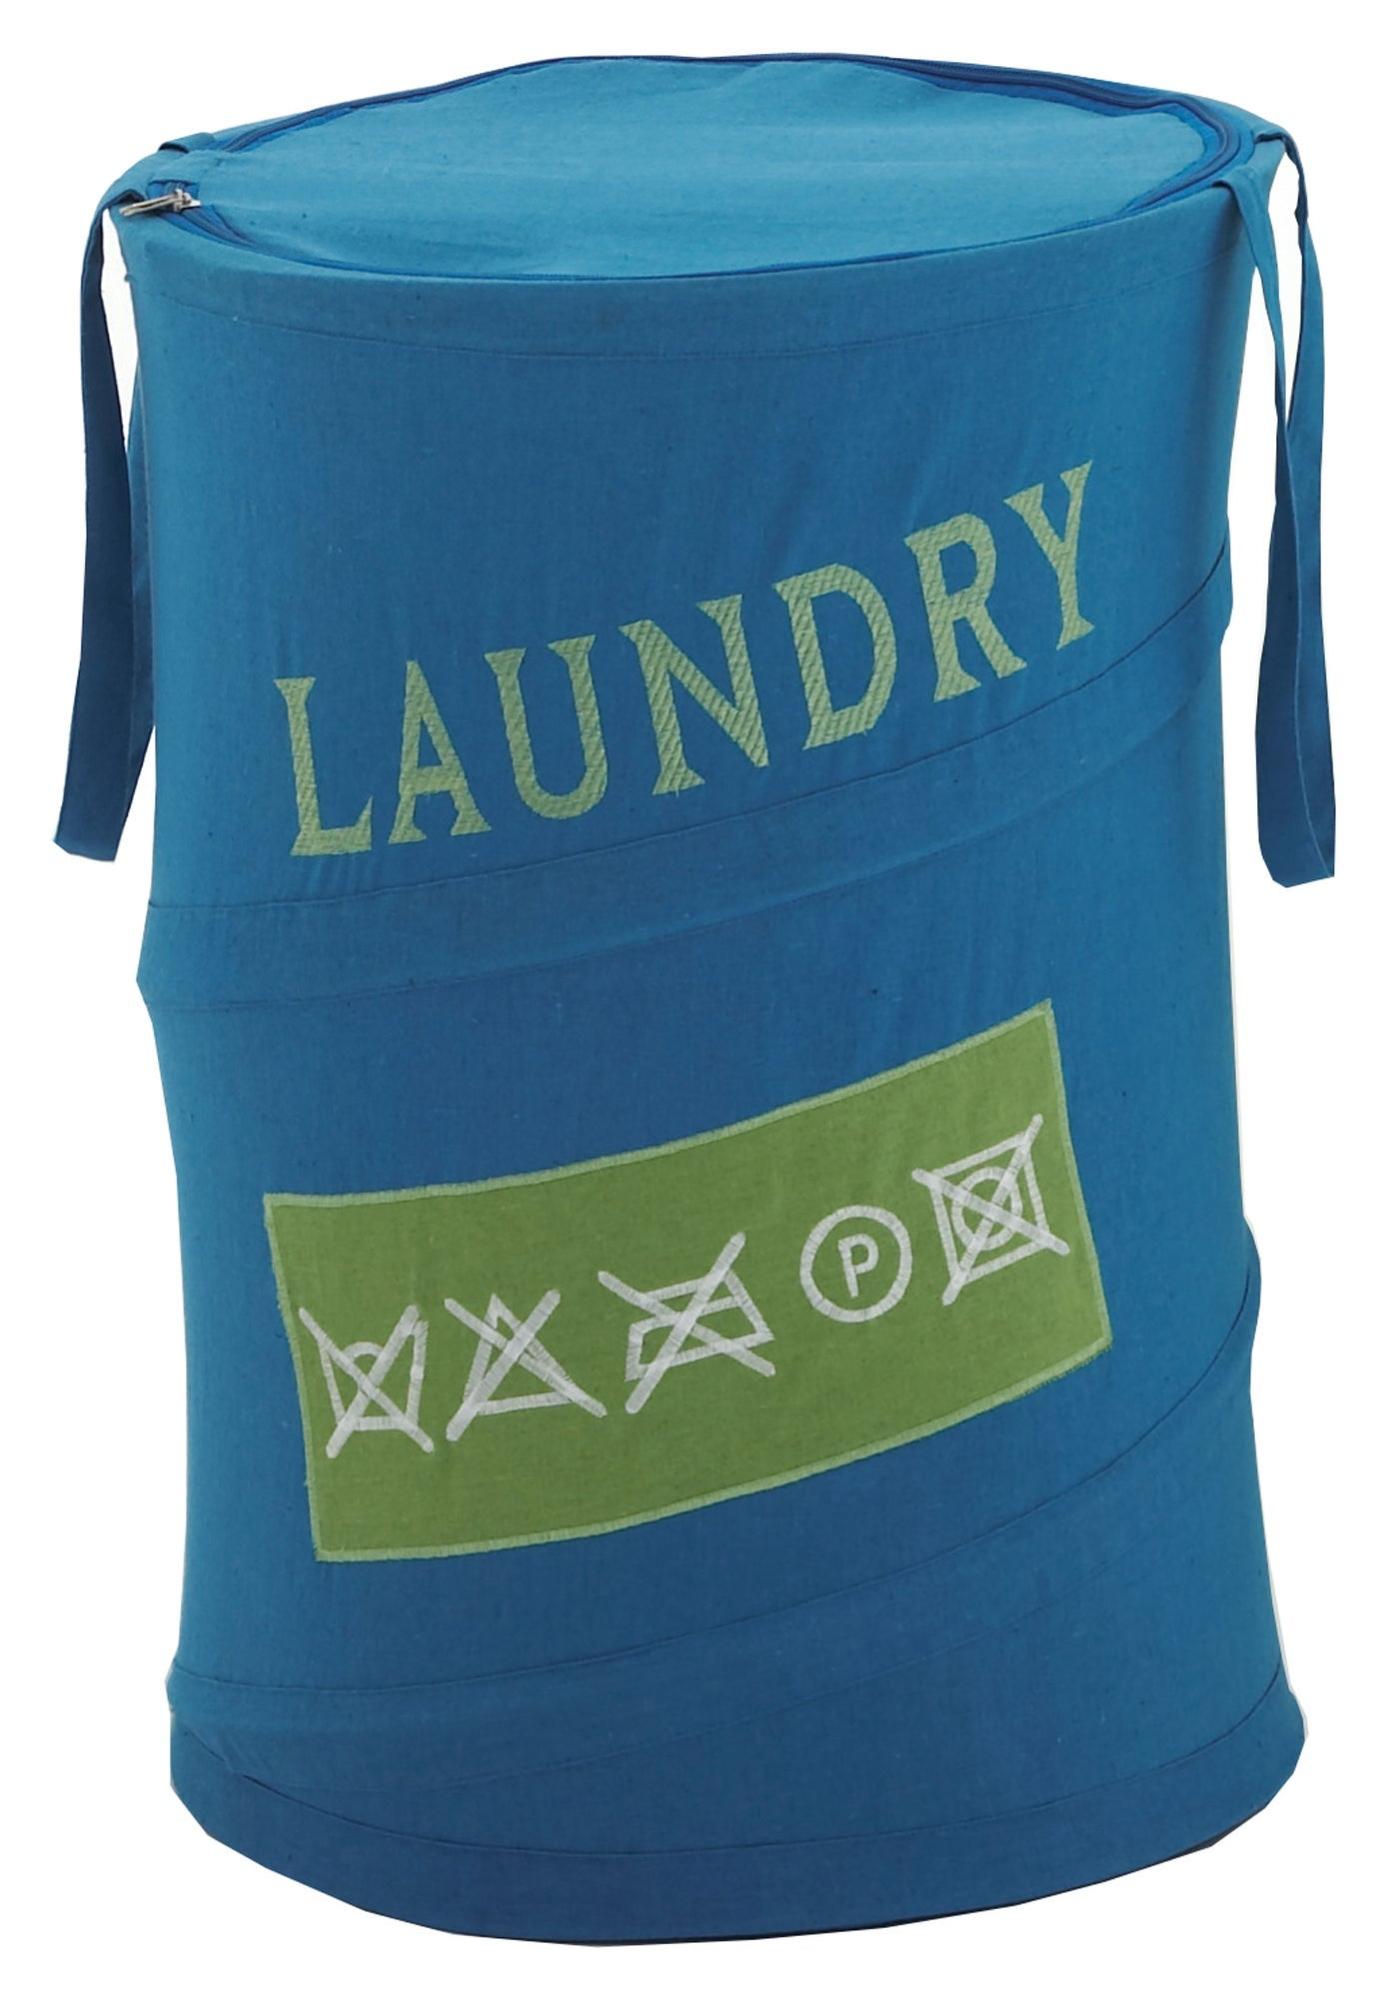 Cesto de ropa laundry azul 65 l